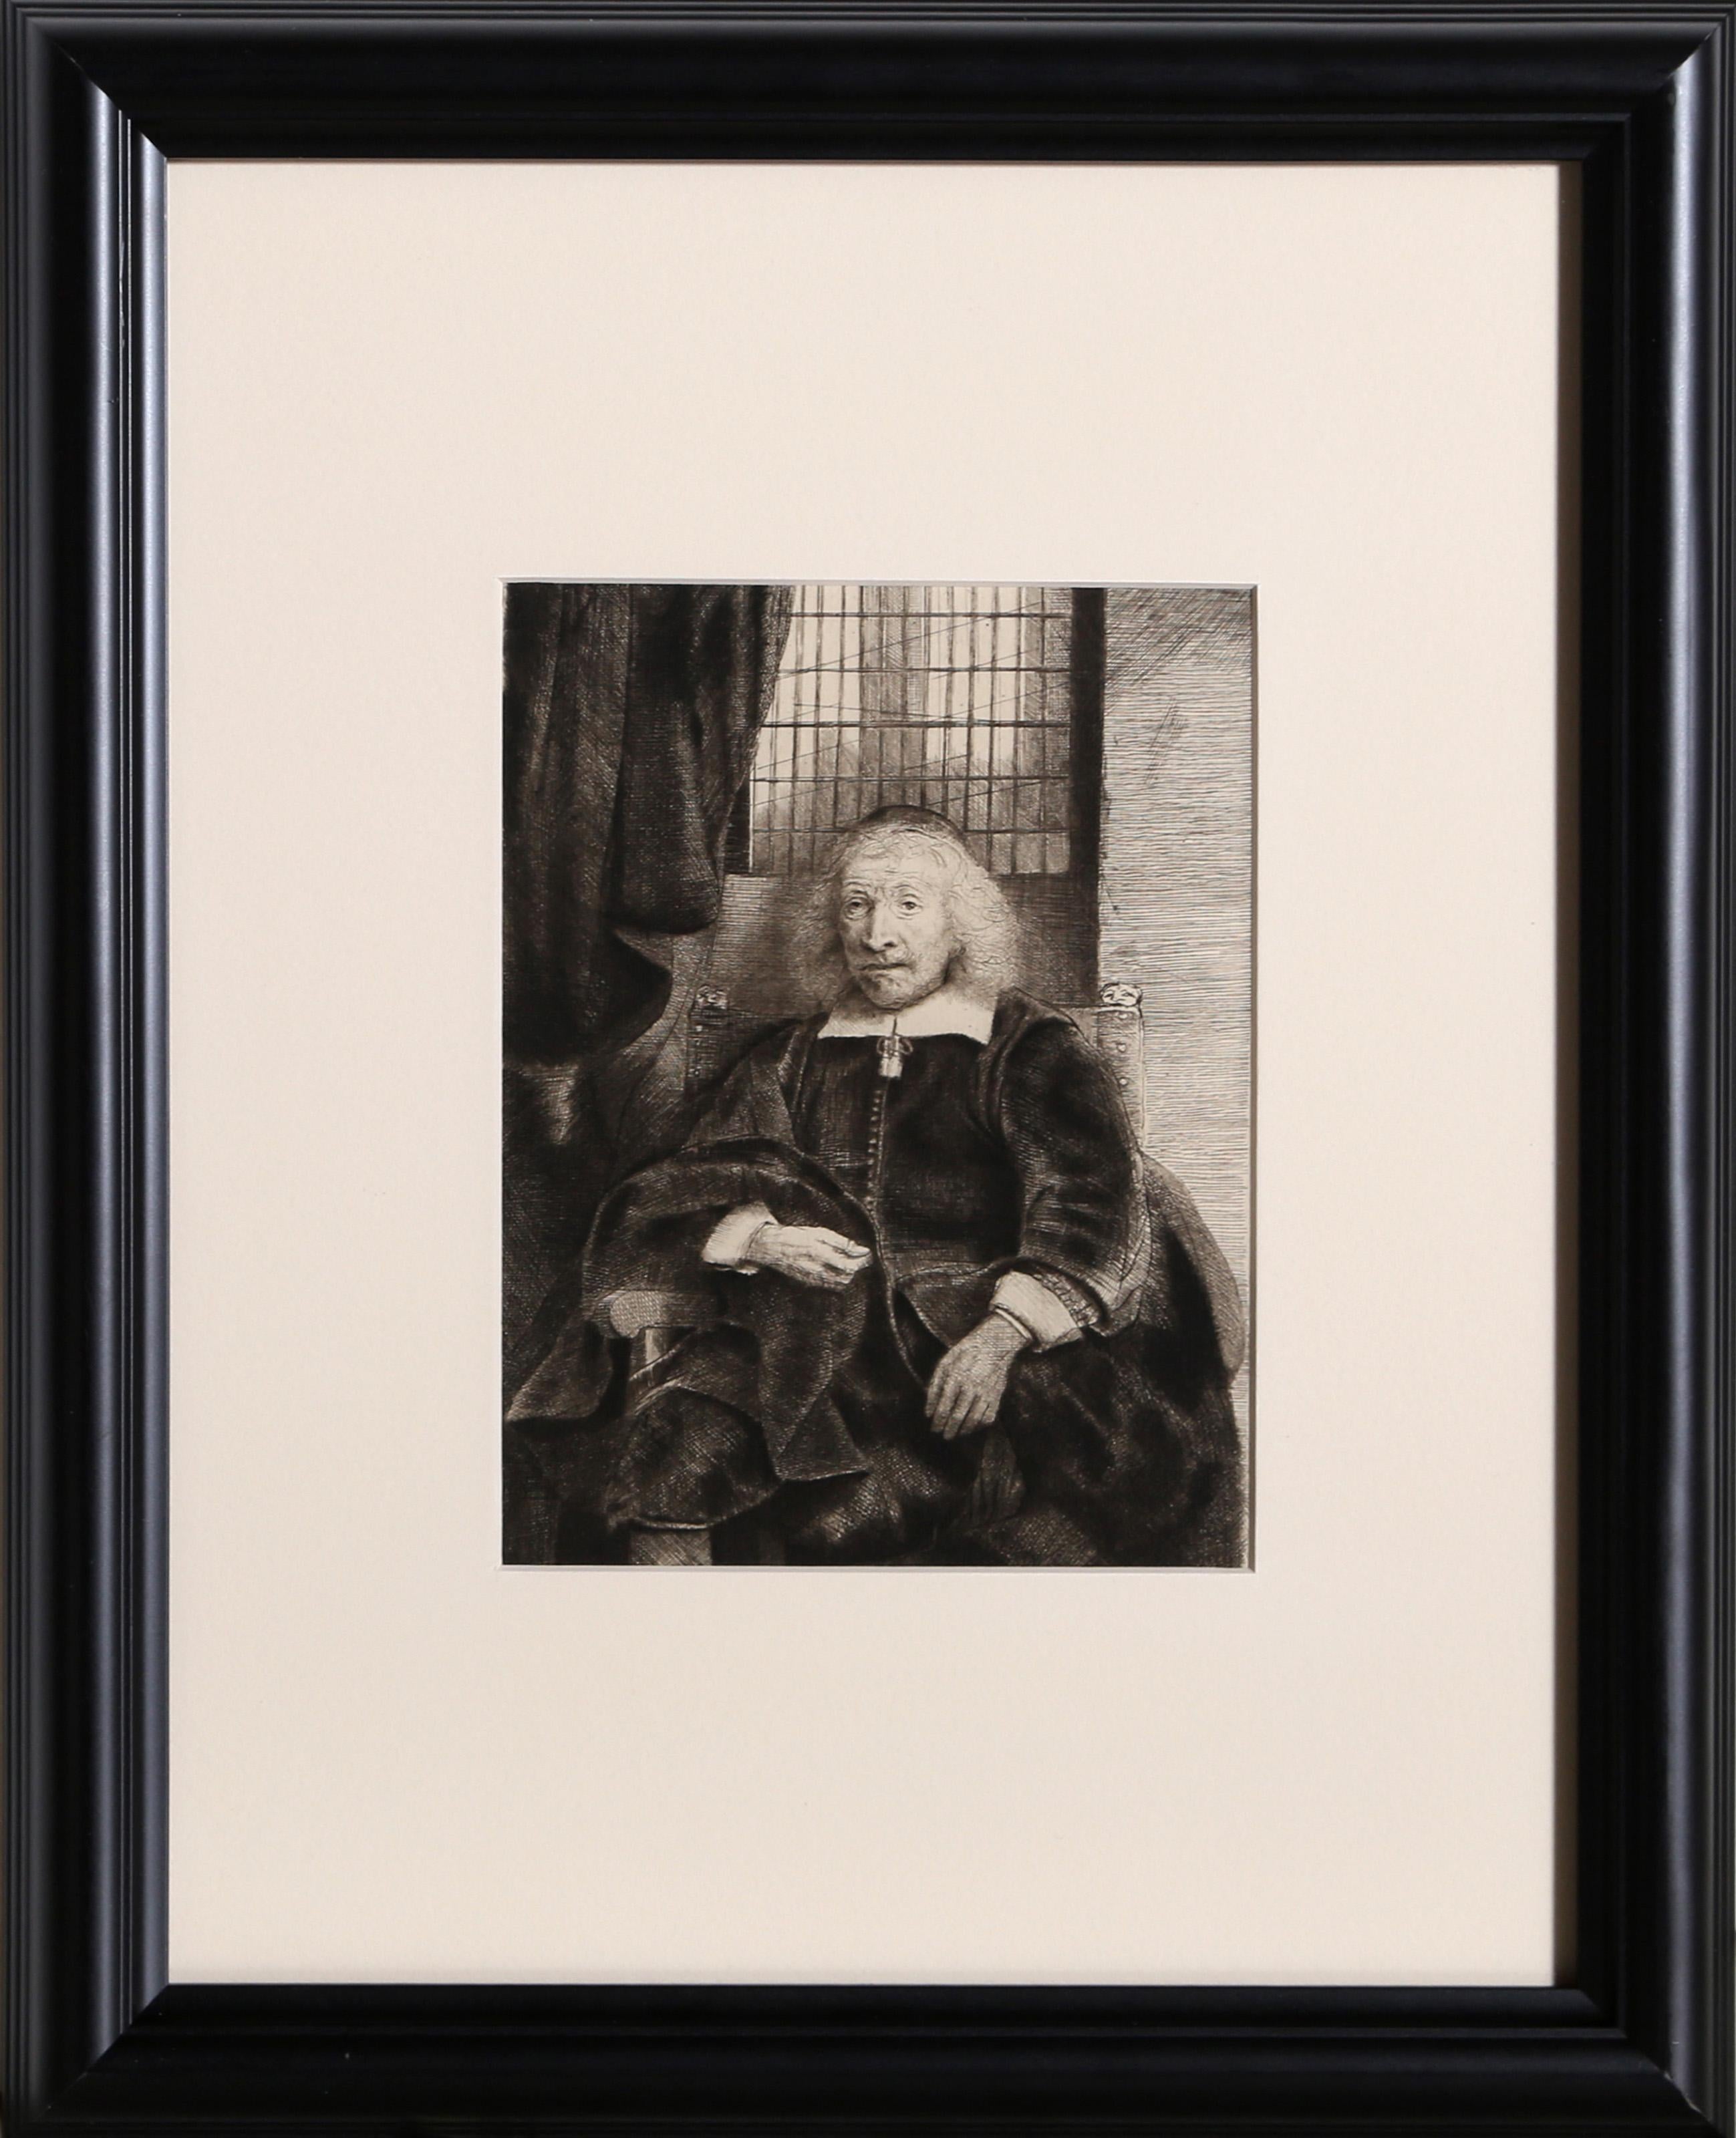 Künstler: Rembrandt van Rijn, nach Amand Durand, Niederländer (1606 - 1669) -  Haaring Levieux (B274), Jahr: 1878 (von Original 1655), Medium: Heliogravüre, Größe: 7.75  x 6 in. (19.69  x 15,24 cm), Rahmengröße: 16 x 13 Zoll, Drucker: Amand Durand,